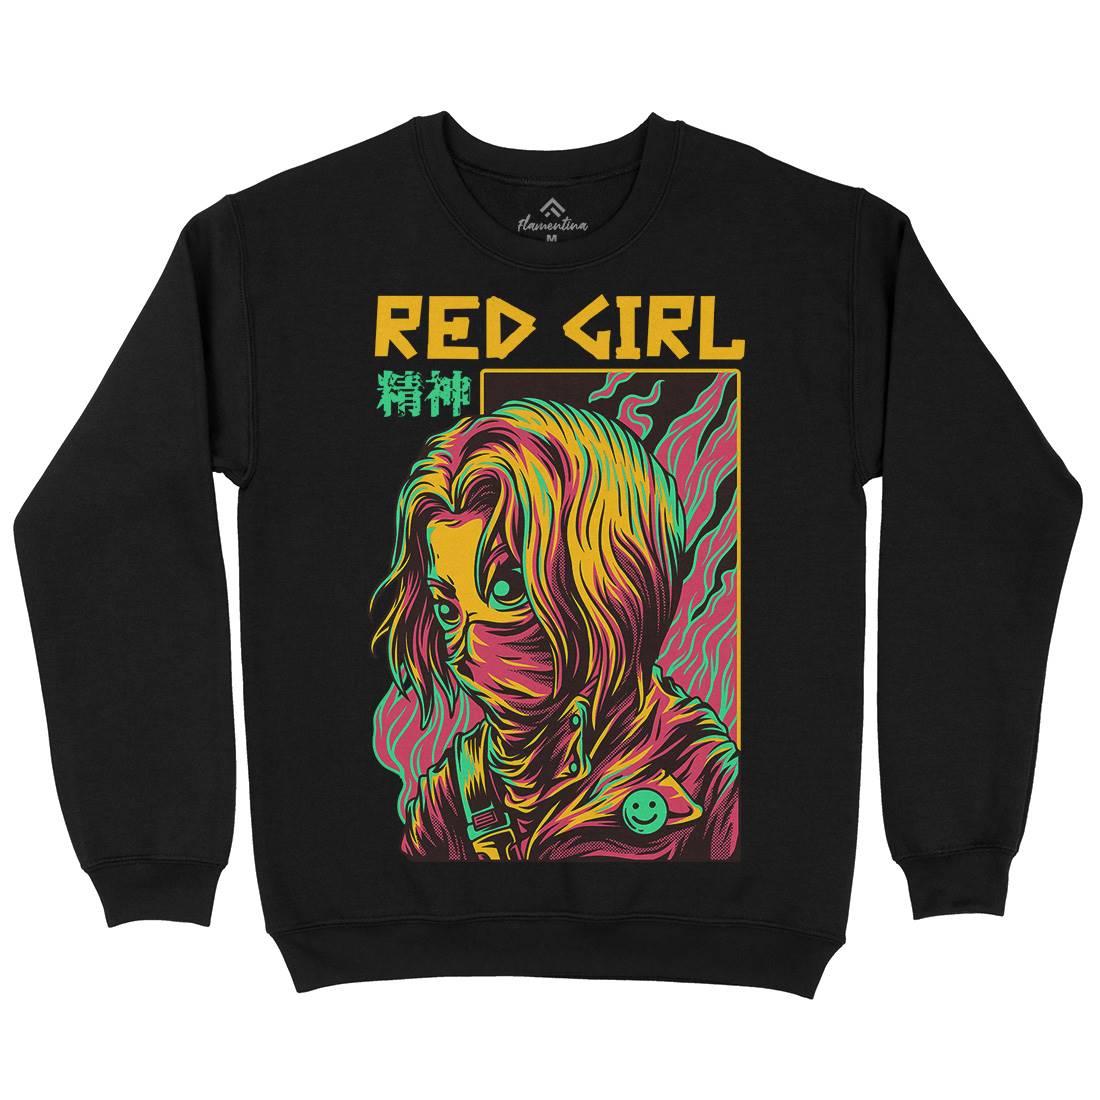 Red Girl Kids Crew Neck Sweatshirt Horror D694